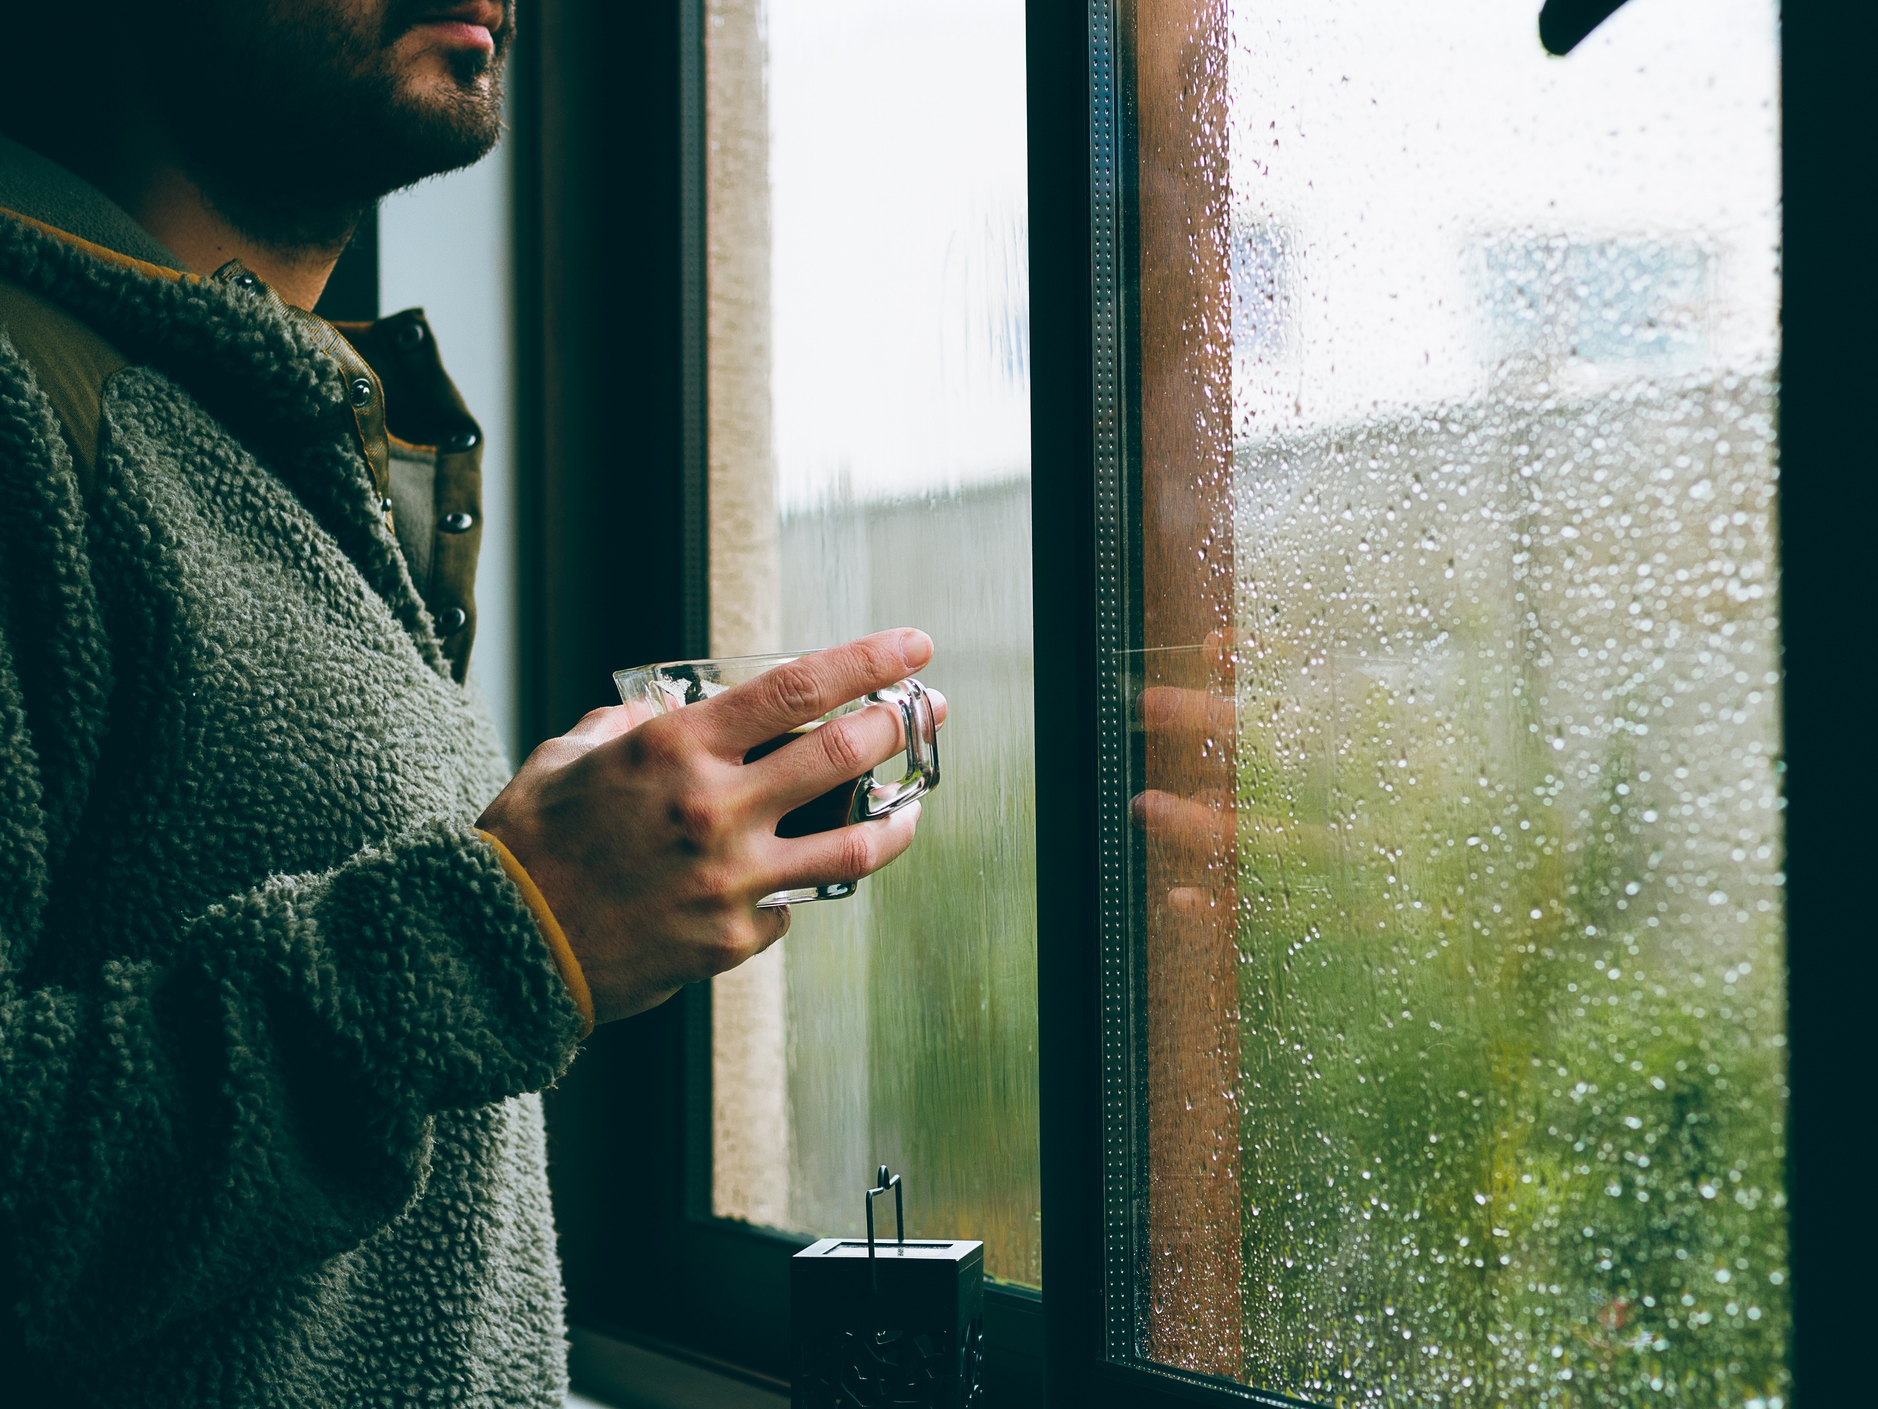 Ilgiz за окном дождь. Мужчина у дождливого окна. Мужчина у окна. Дождь в окне. Дождь за окном.